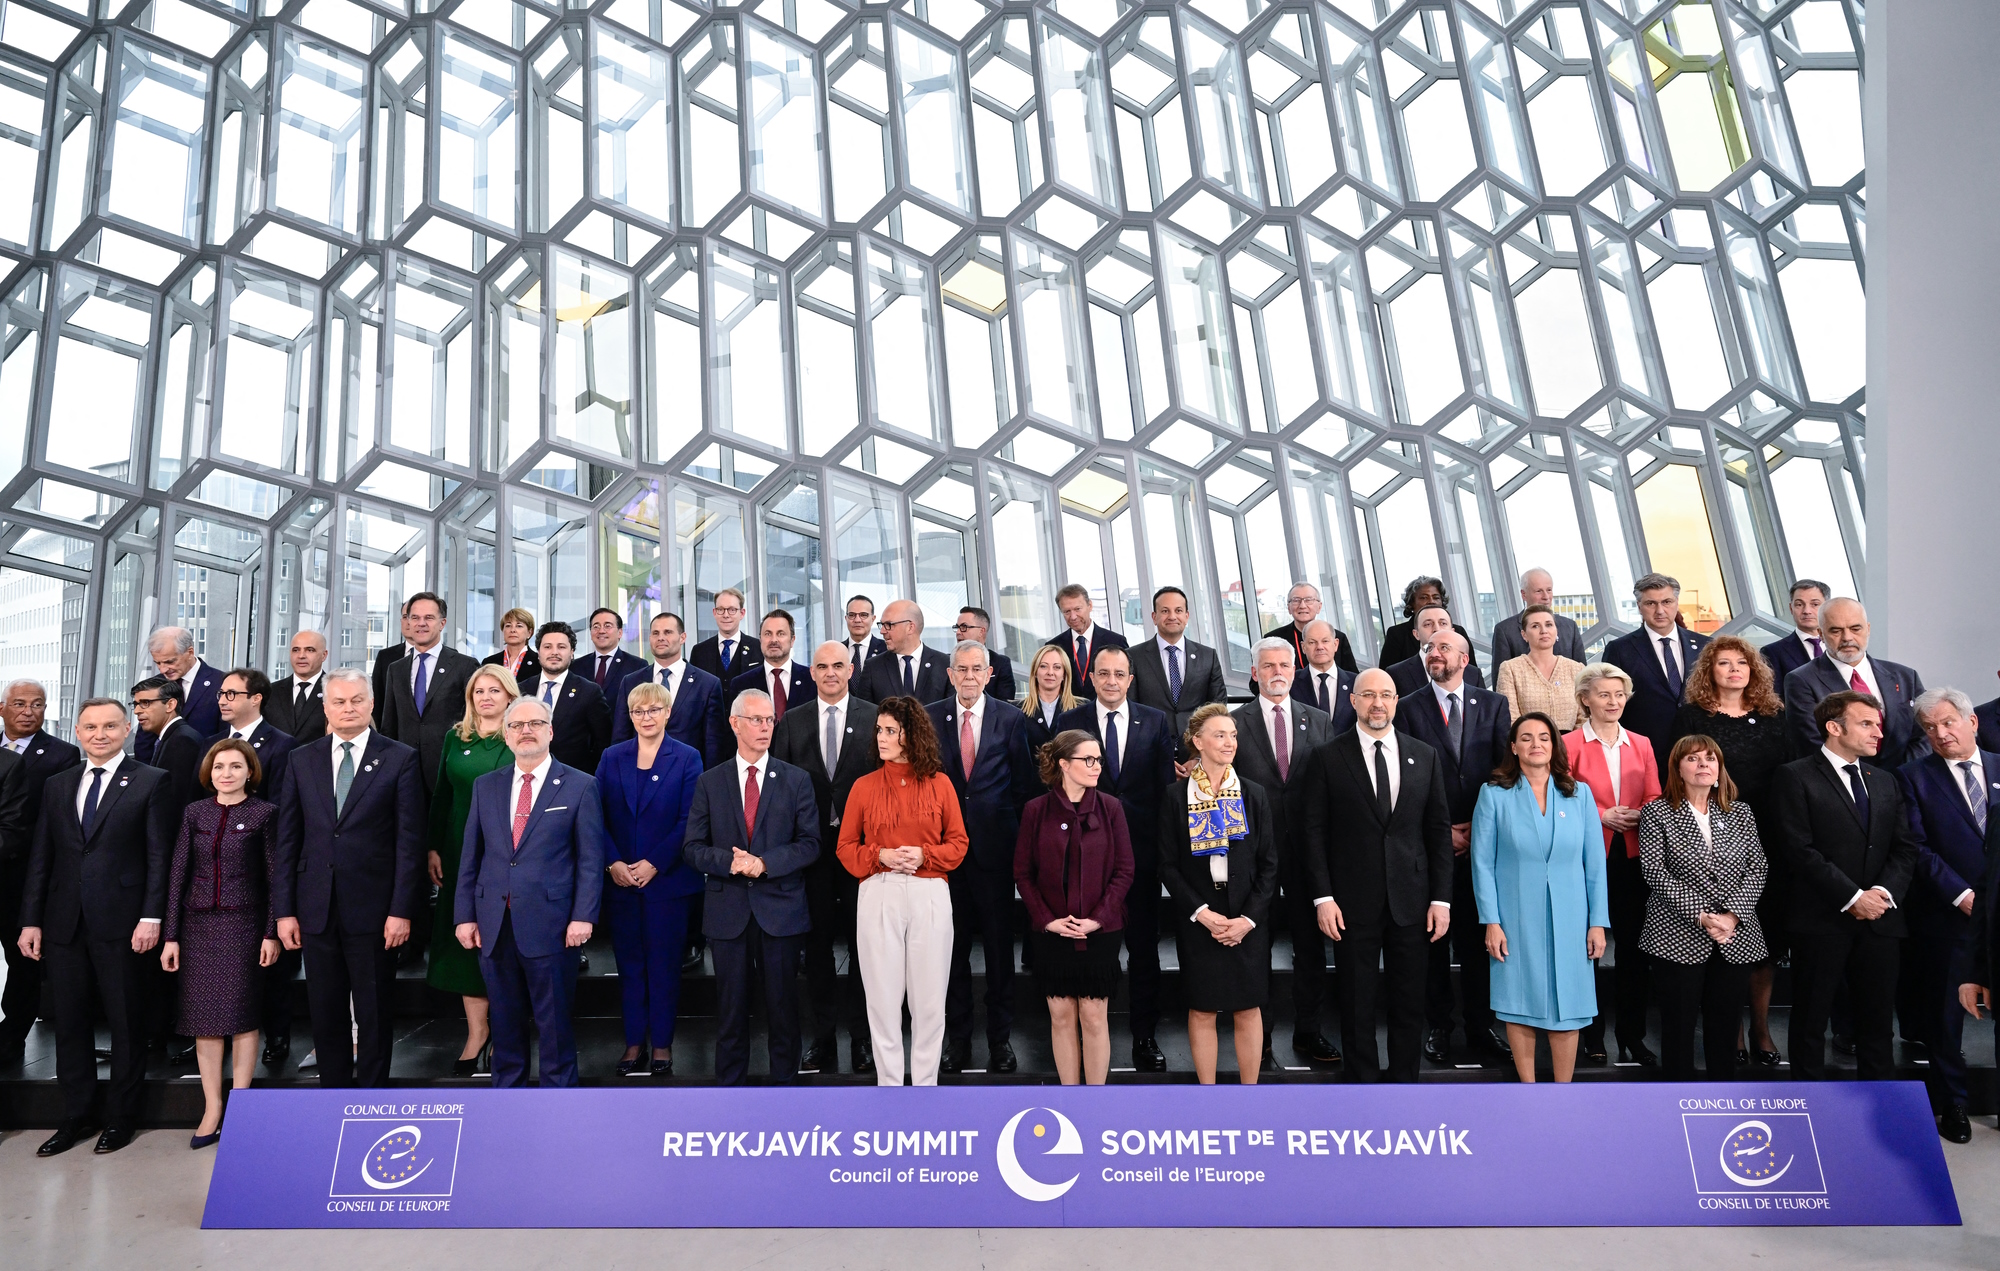 Gipfeltreffen des Europarates in Reykjavik